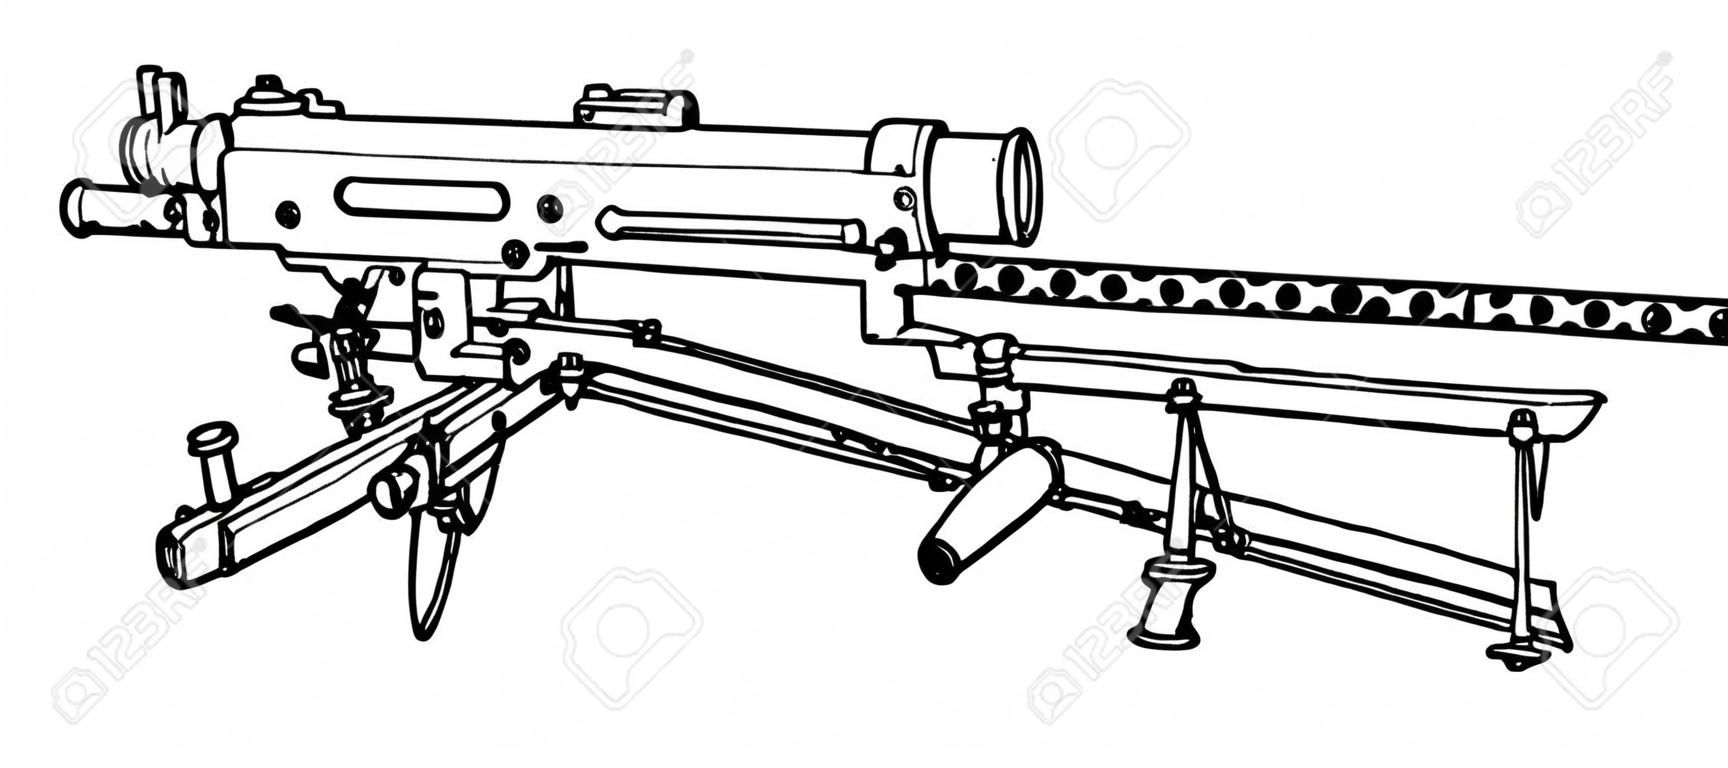 La ametralladora Browning se utilizó como infantería ligera, dibujo de línea vintage o ilustración de grabado.